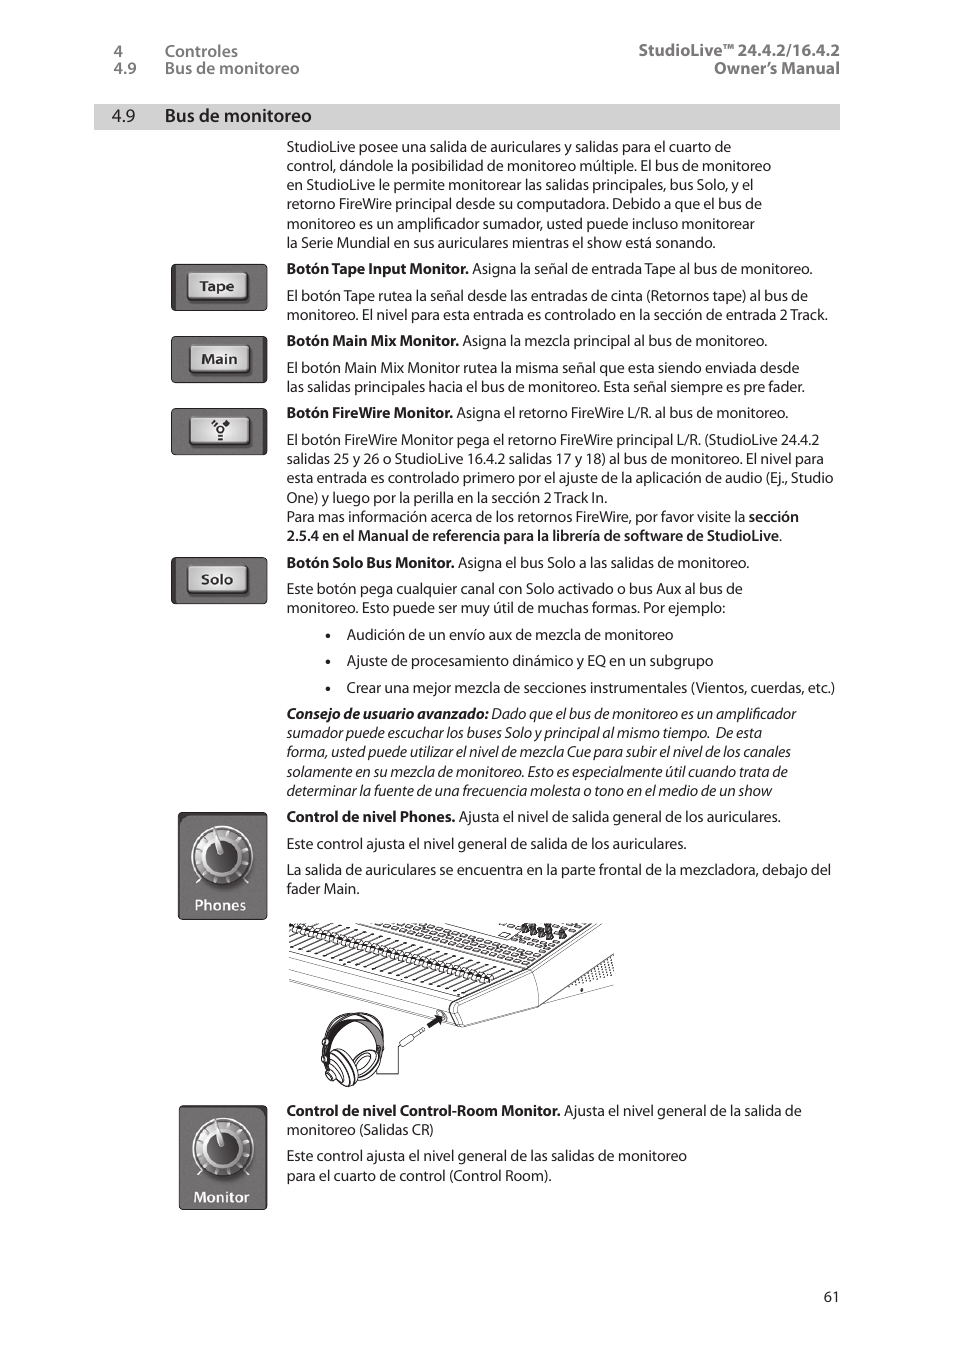 9 bus de monitoreo, 9 bus de monitoreo — 61 | PreSonus StudioLive 24.4.2 Manual del usuario | Página 65 / 114